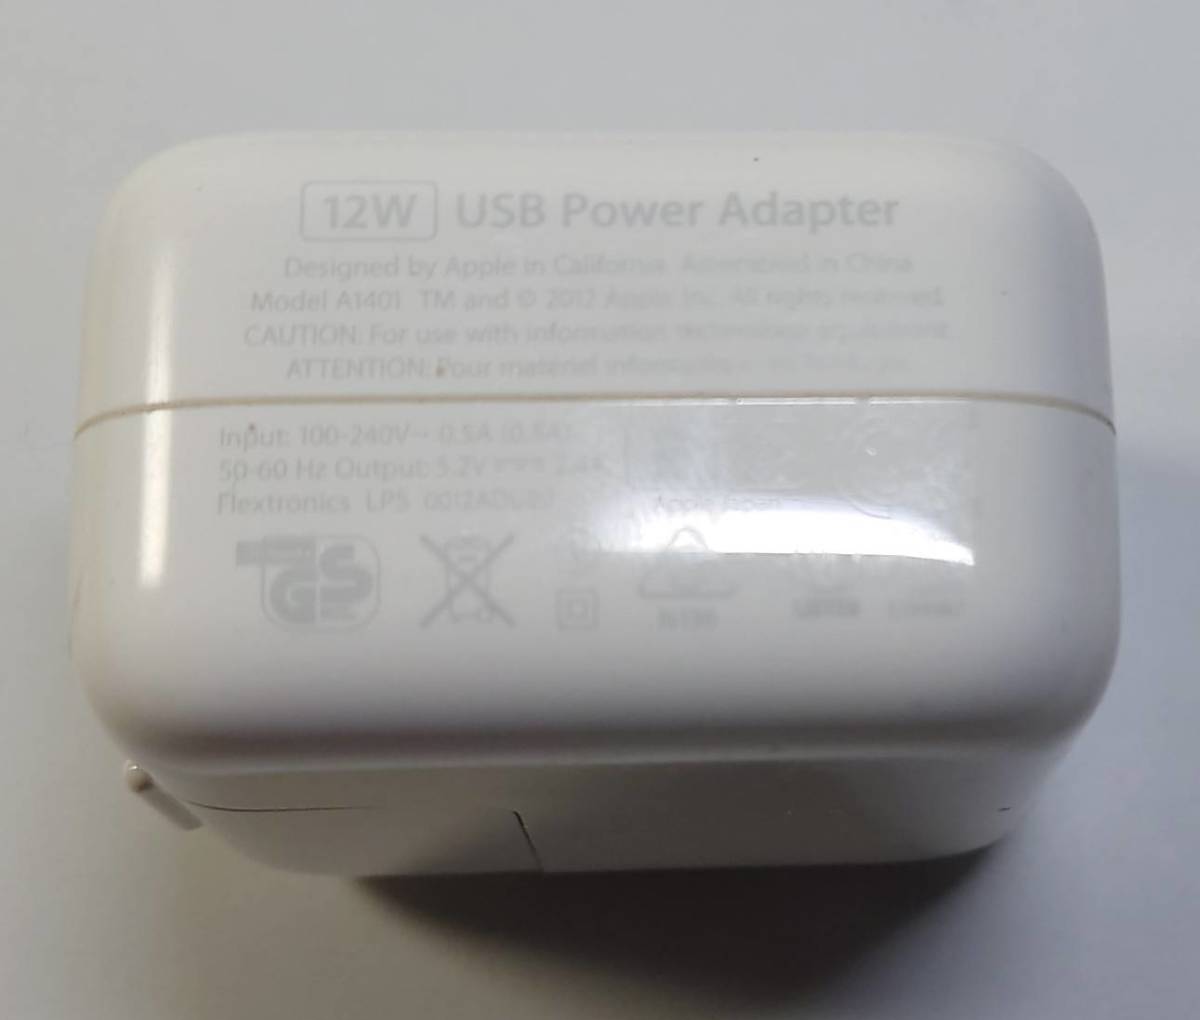 未使用 最高級のスーパー KN941 12W USB Power Adapter A1401 充電器 speaktotellthenproudlysell.com speaktotellthenproudlysell.com